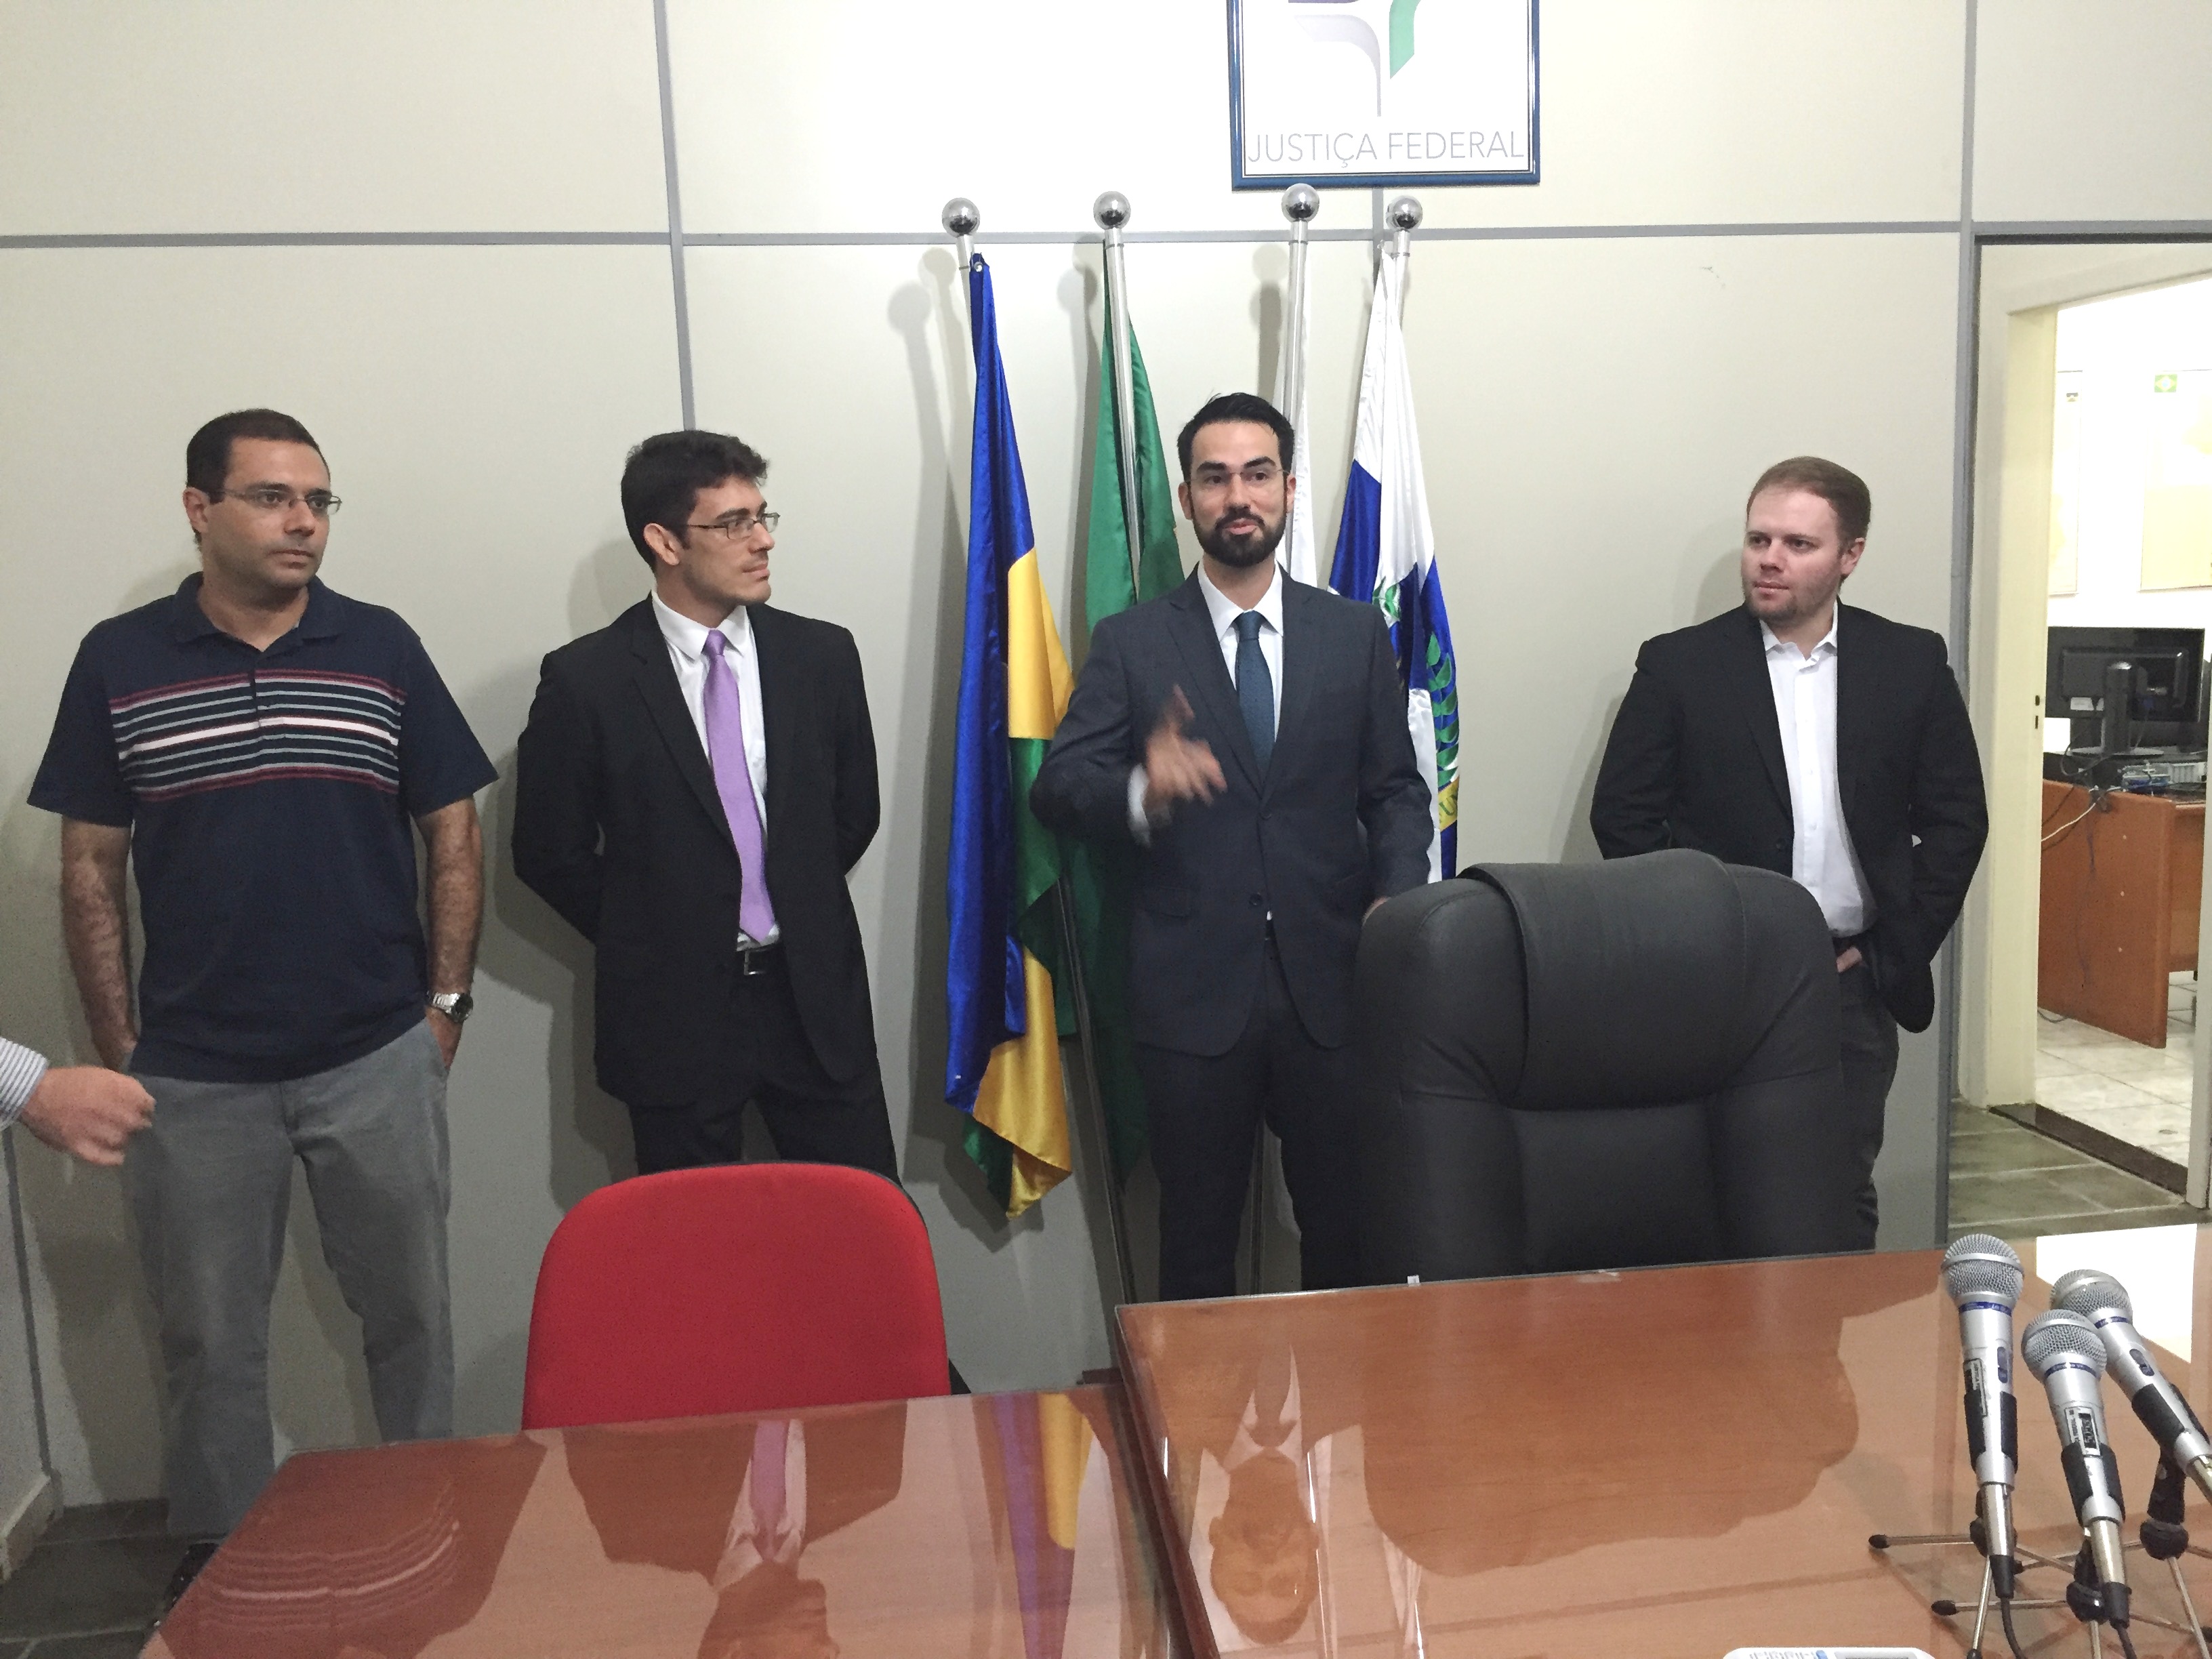 Novos juízes federais em Ji-Paraná